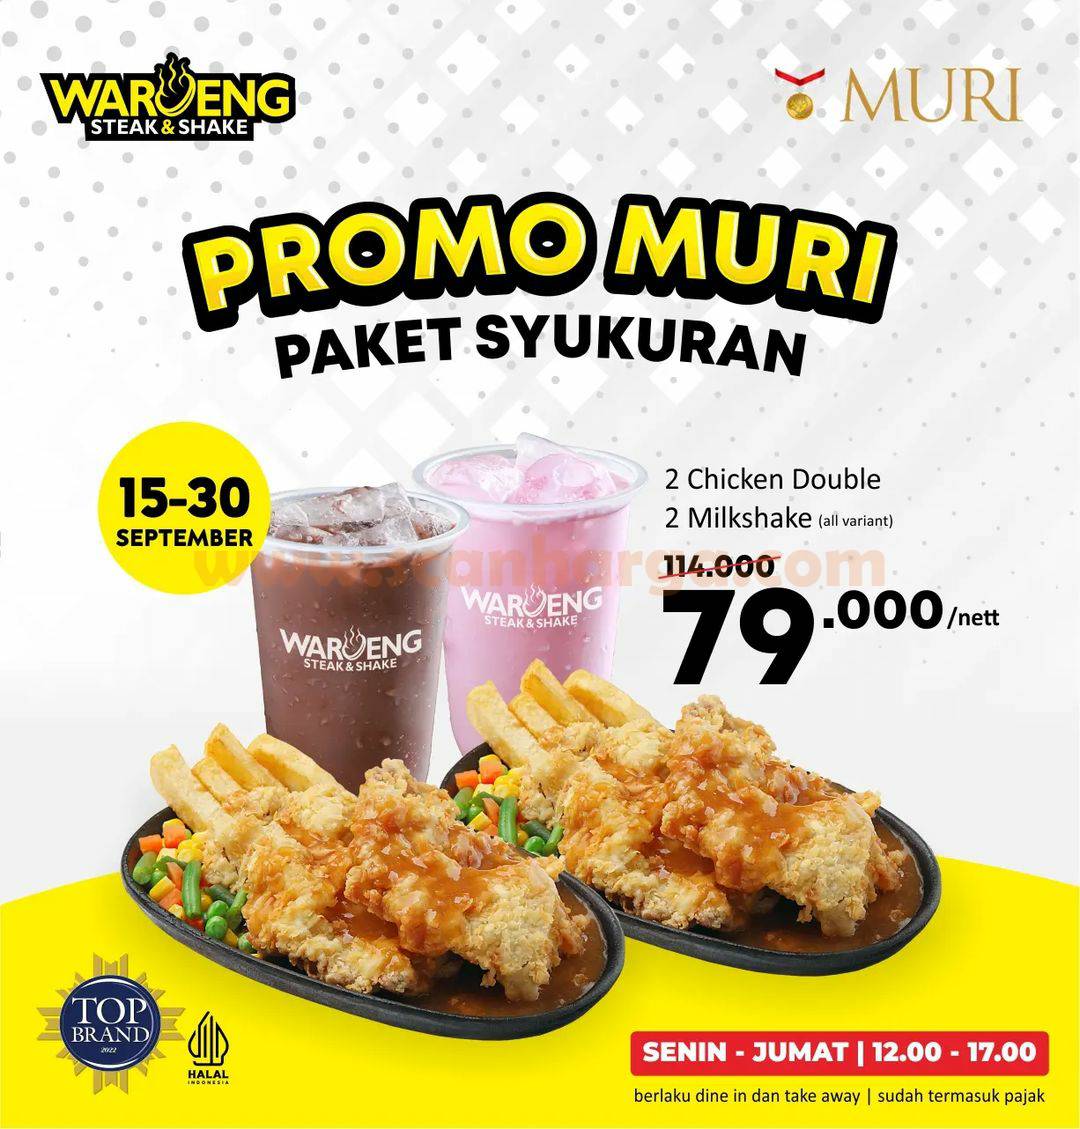 Waroeng Steak & Shake Promo MURI - Harga Spesial Paket Syukuran cuma 79RB